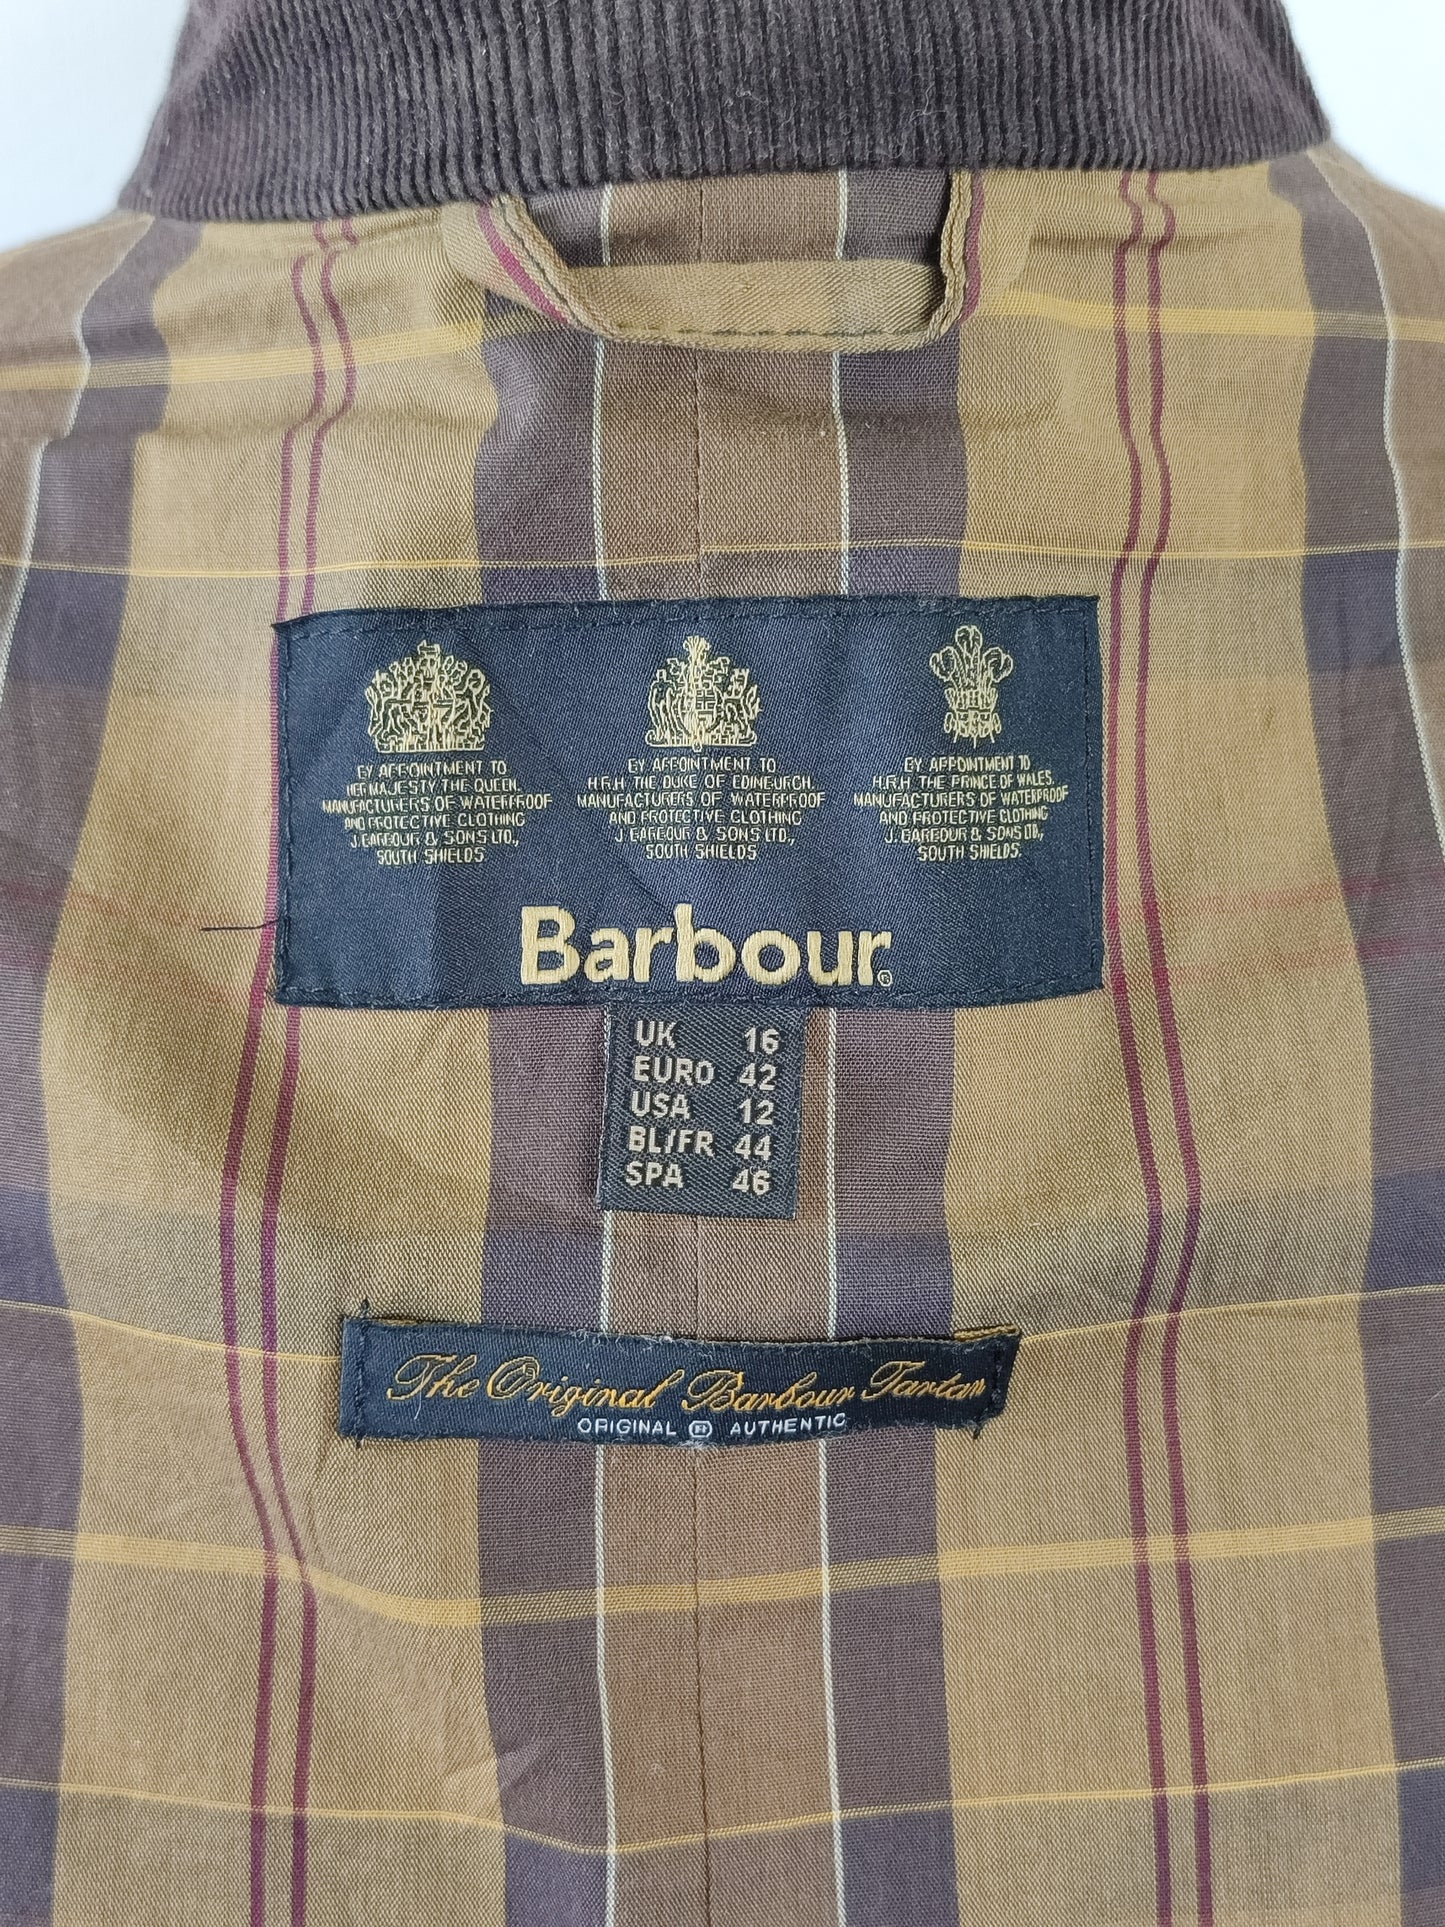 Giacca Barbour unisex marrone cerata leggera tg.46 Uk16-Wax Flyweight Urban Jacket Uk16